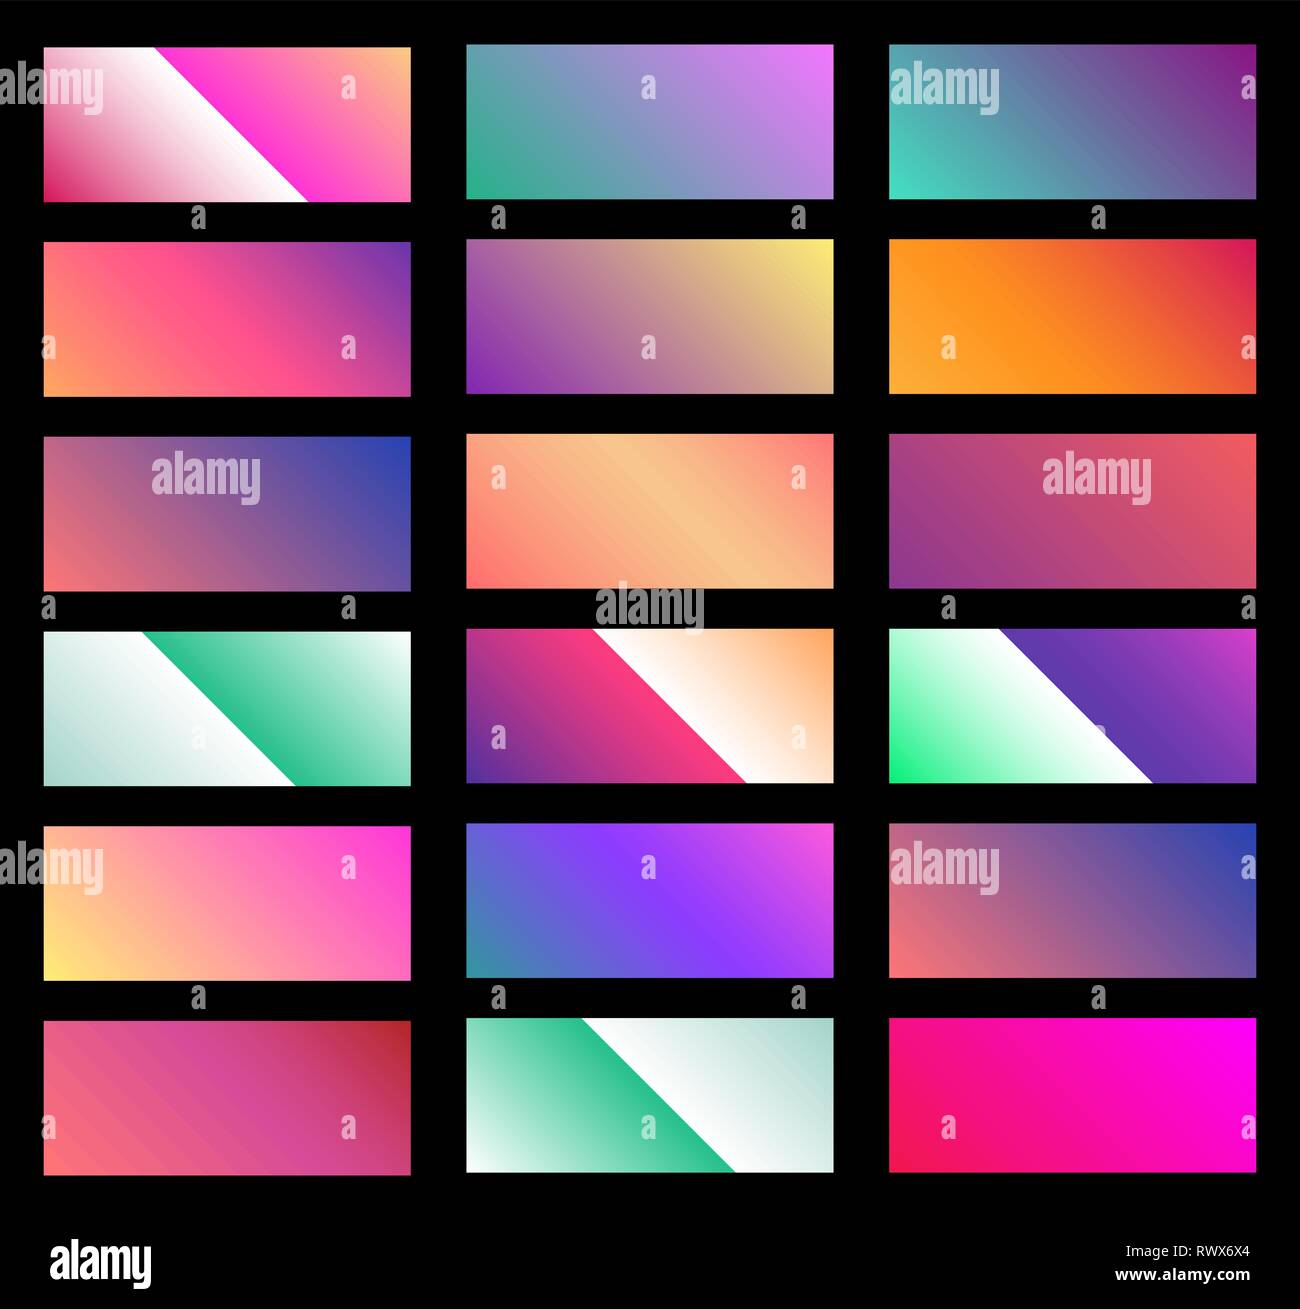 Điểm nhấn của hình nền soft color background gradient là sự khéo léo trong cách phối màu, giúp cho màn hình máy tính của bạn trở nên thật sự đẹp mắt. Hãy nhấn vào hình để tìm hiểu thêm về hình nền tuyệt vời này!